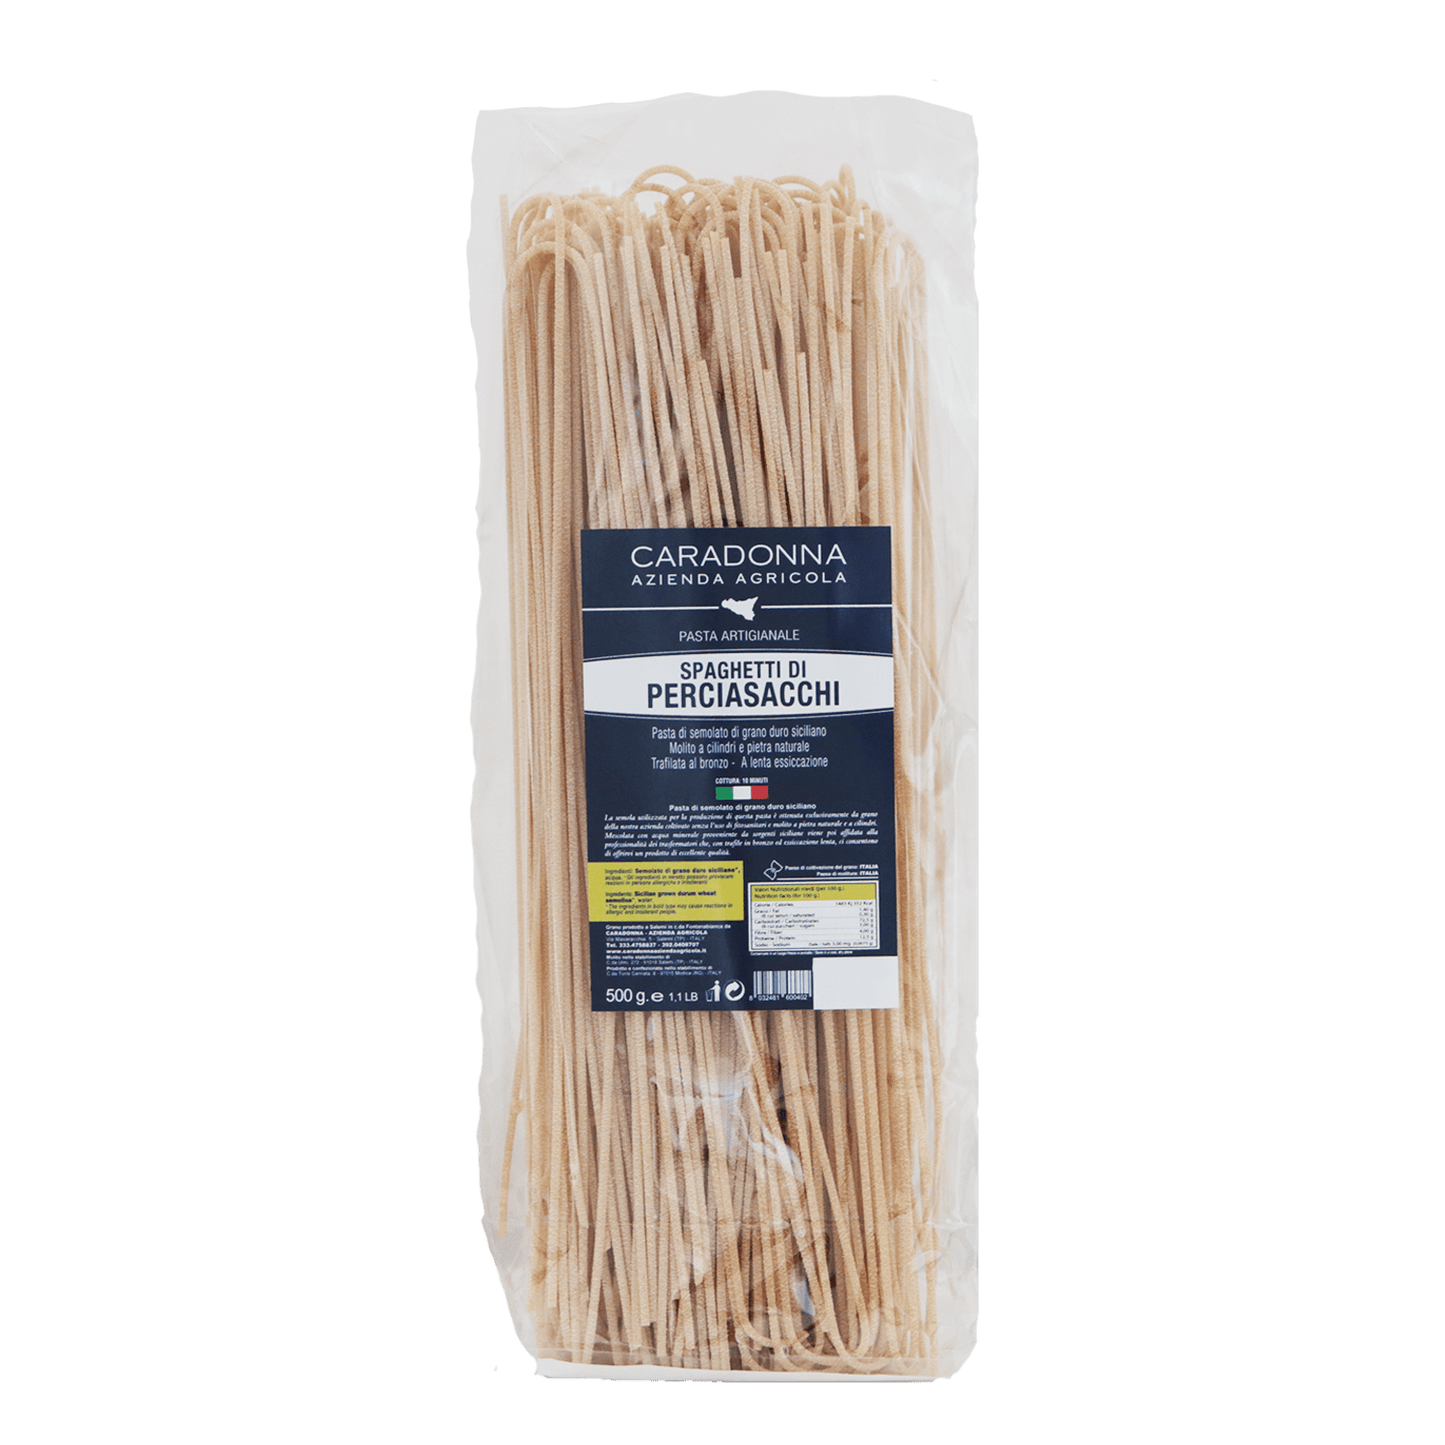 Spaghetti Siciliani di Perciasacchi - Caradonna